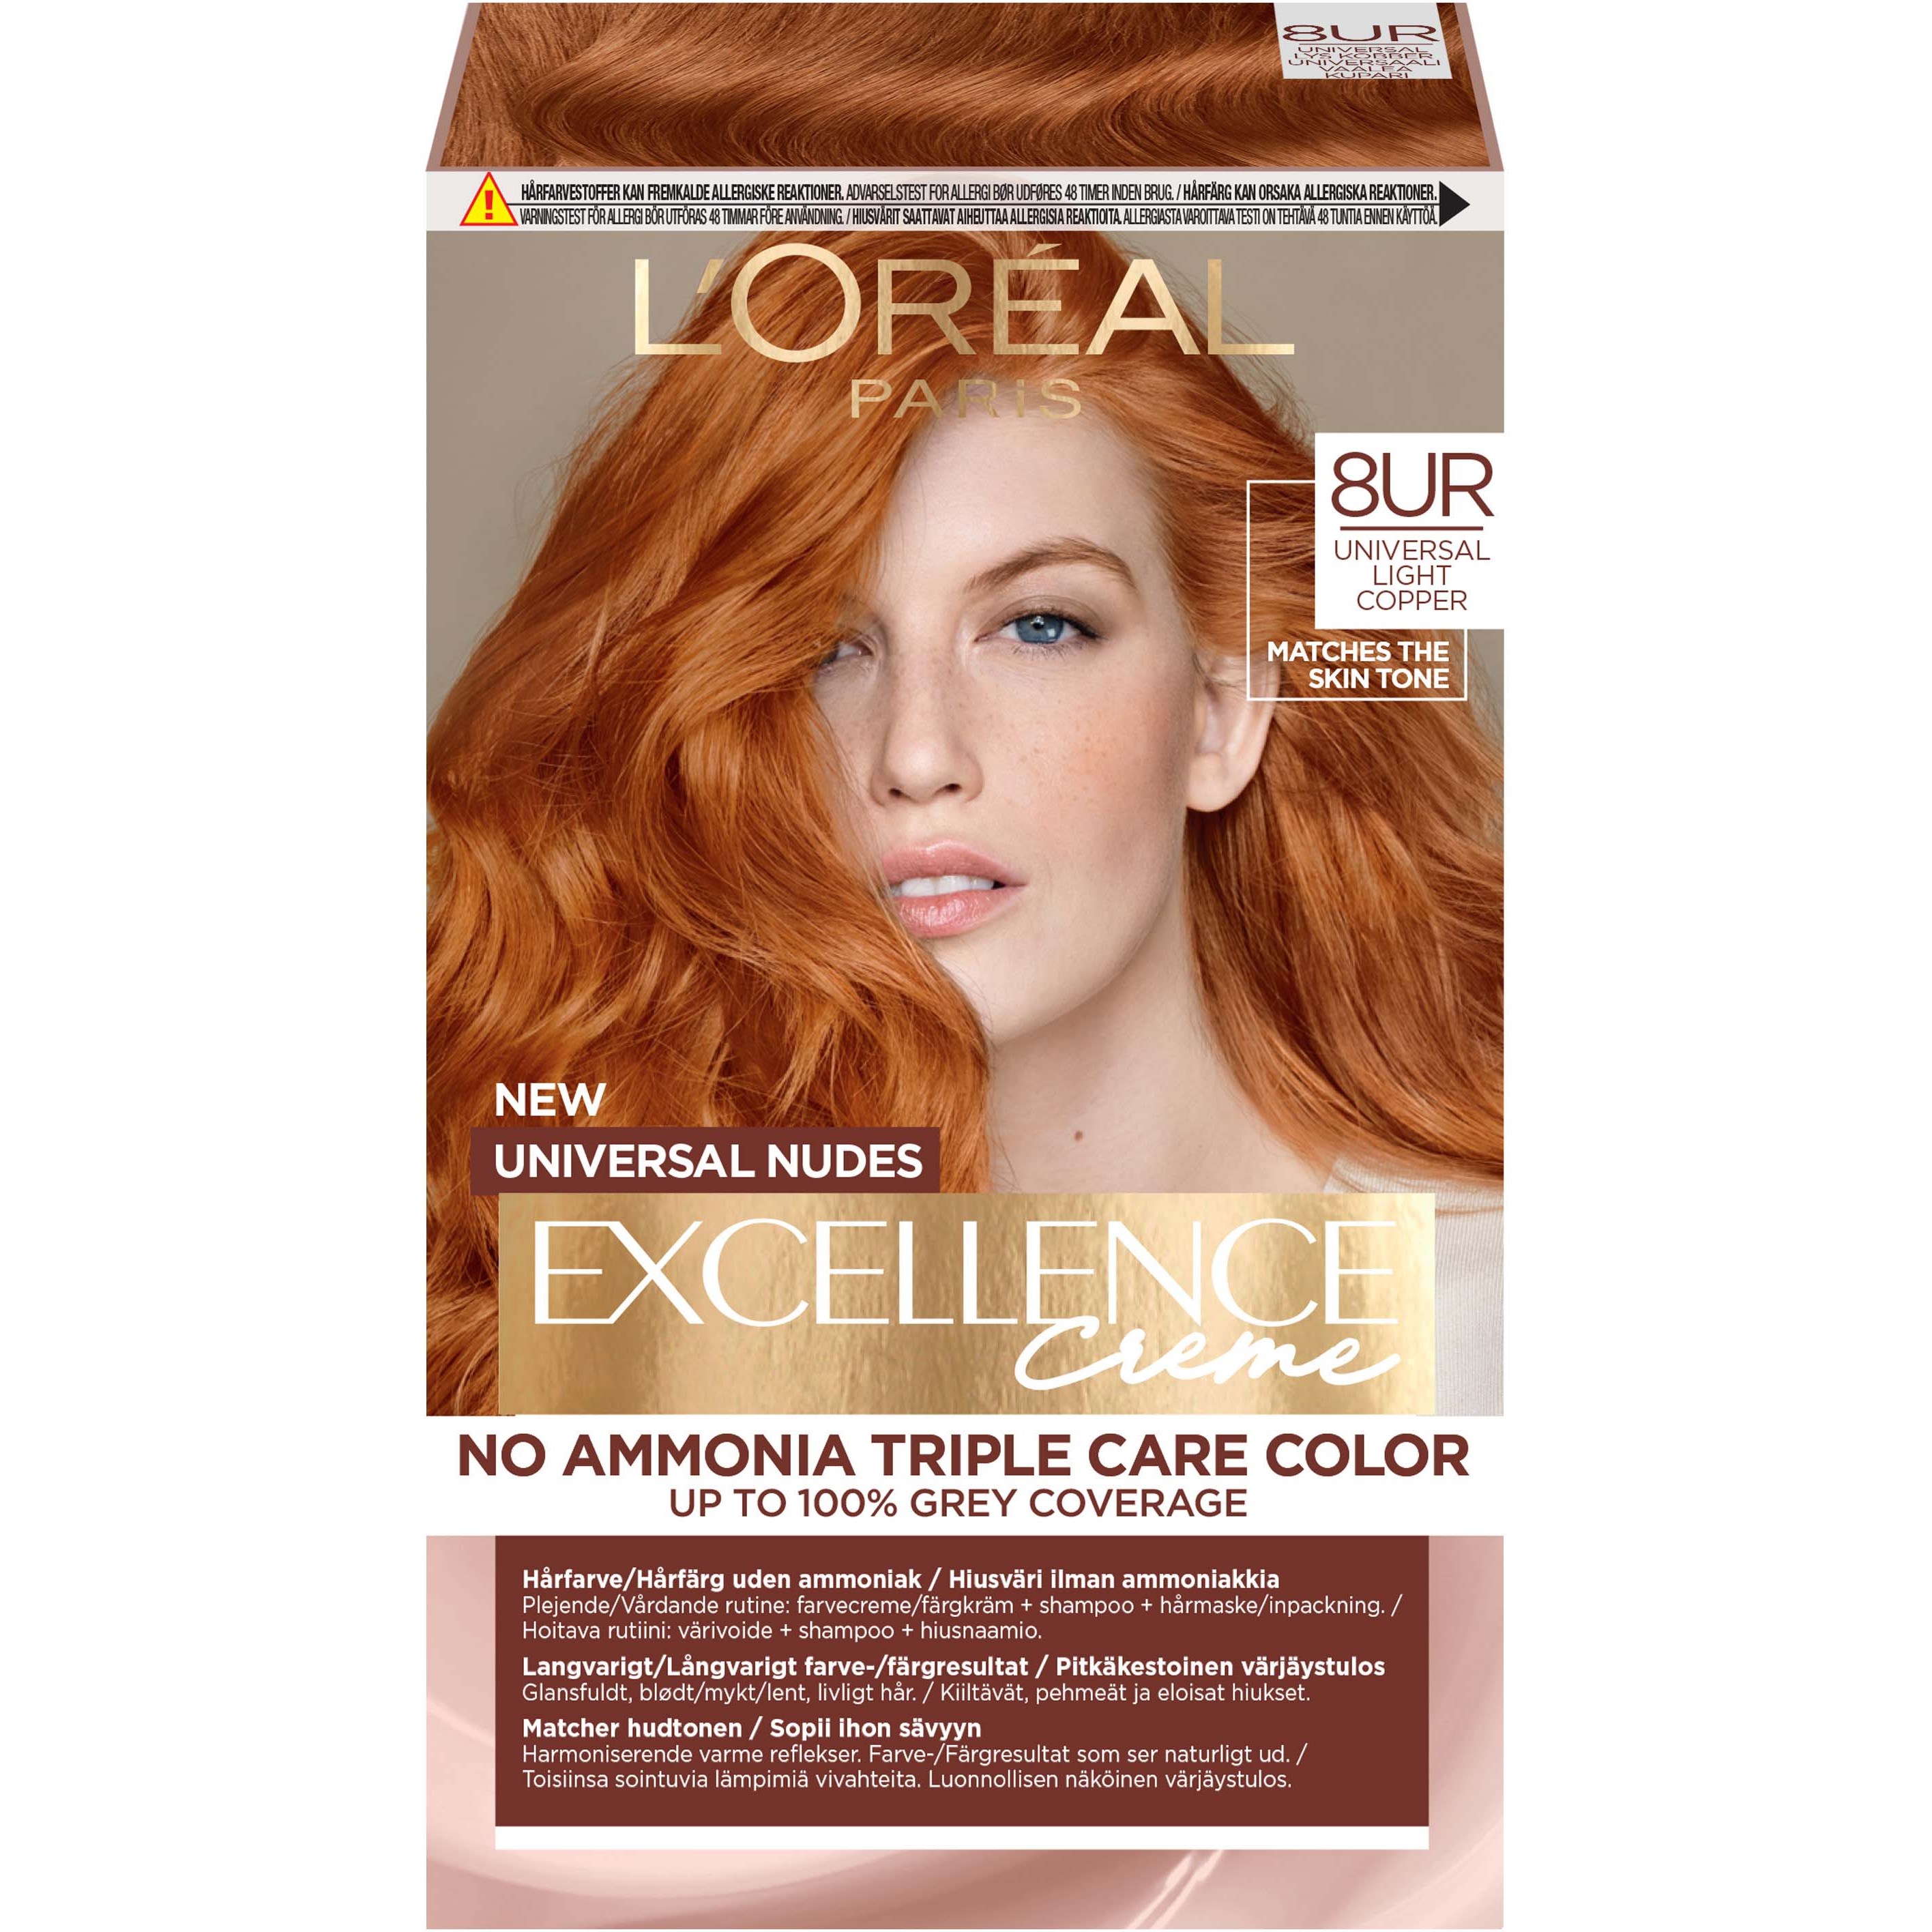 Bilde av Loreal Paris Excellence Crème Universal Nudes Hair Color 8ur Universal